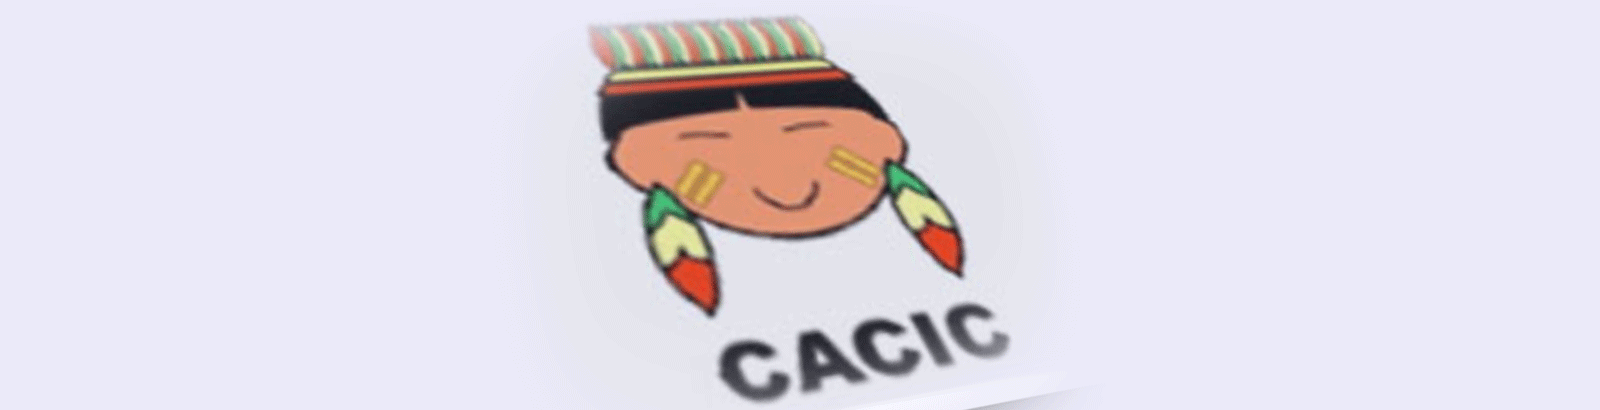 DICA: CACIC - Configurador Automático e Coletor de Informações Computacionais